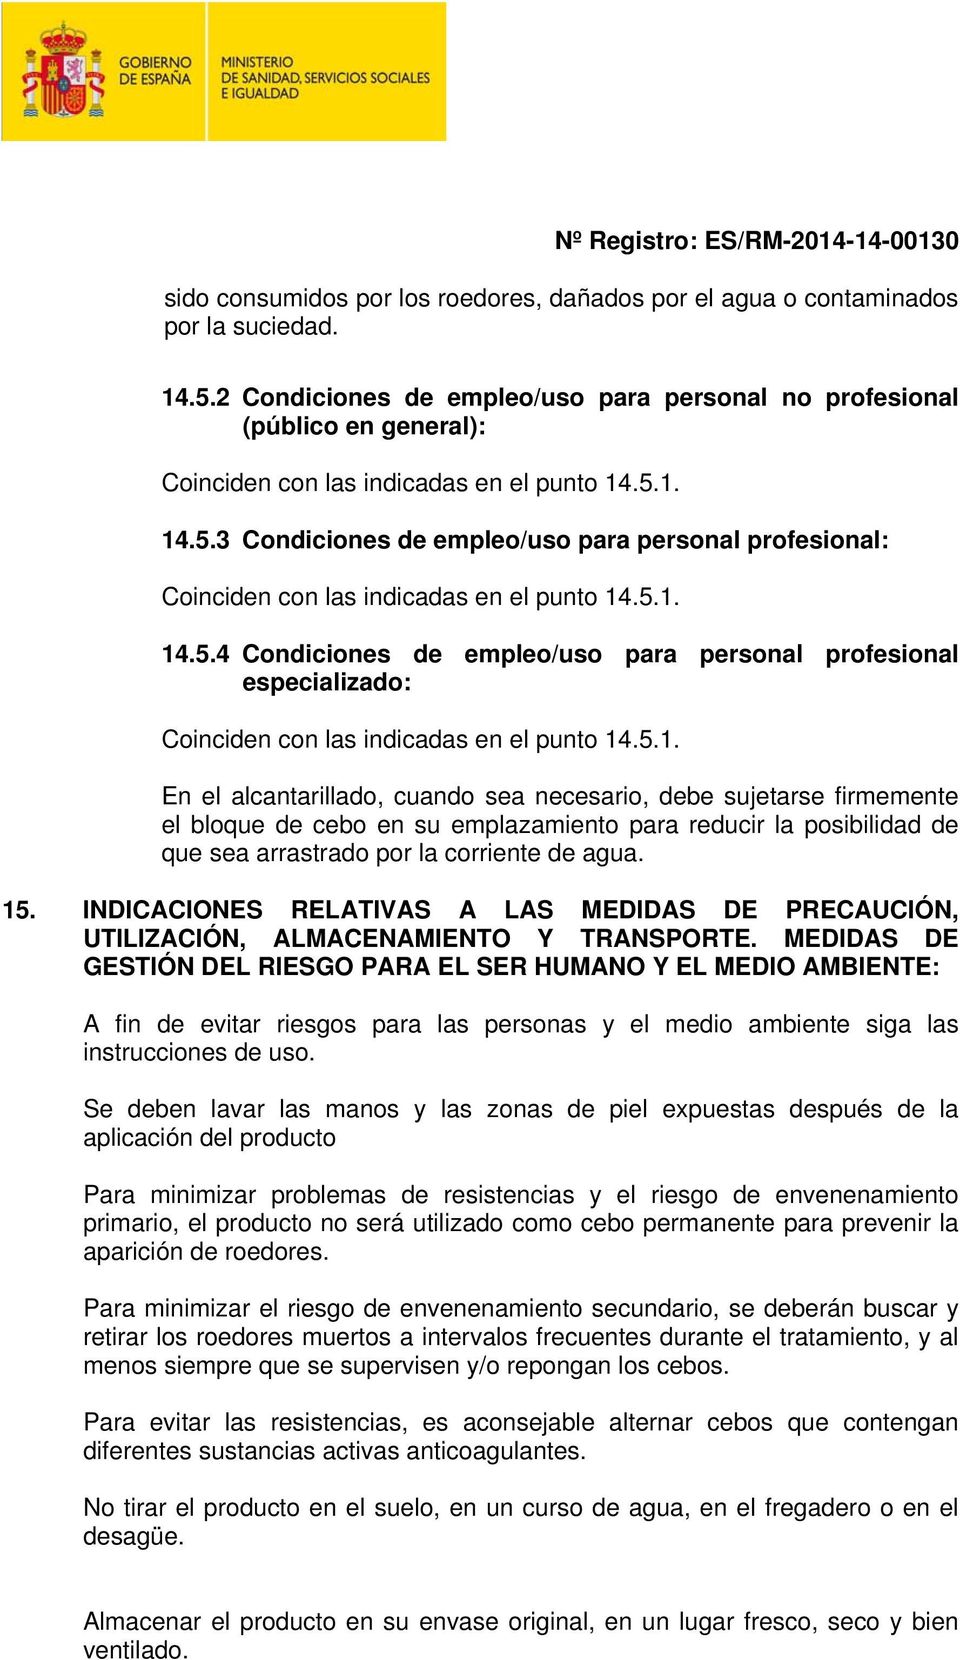 1. 14.5.3 Condiciones de empleo/uso para personal profesional: Coinciden con las indicadas en el punto 14.5.1. 14.5.4 Condiciones de empleo/uso para personal profesional especializado: Coinciden con las indicadas en el punto 14.